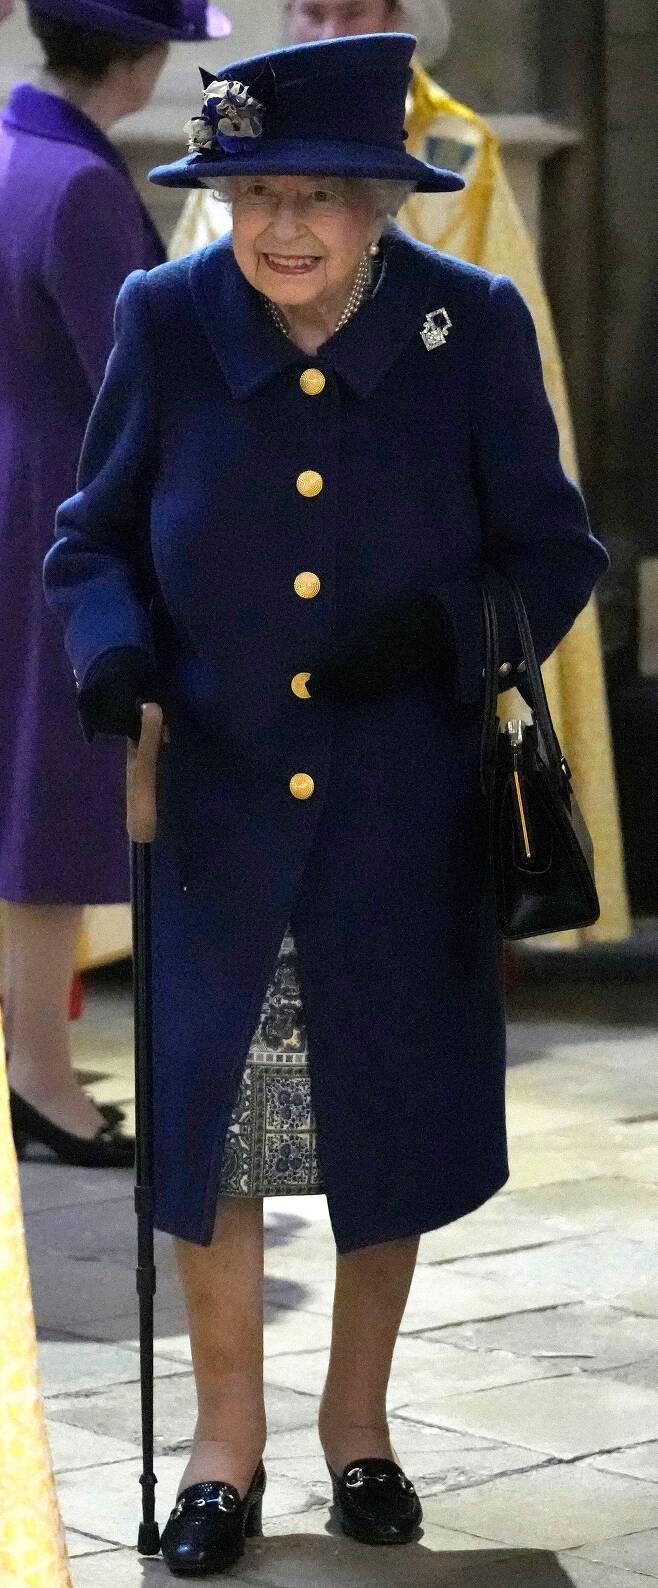 12일 지팡이를 짚고 런던 웨스트민스터사원에 나타난 엘리자베스 2세 영국 여왕/AP 연합뉴스